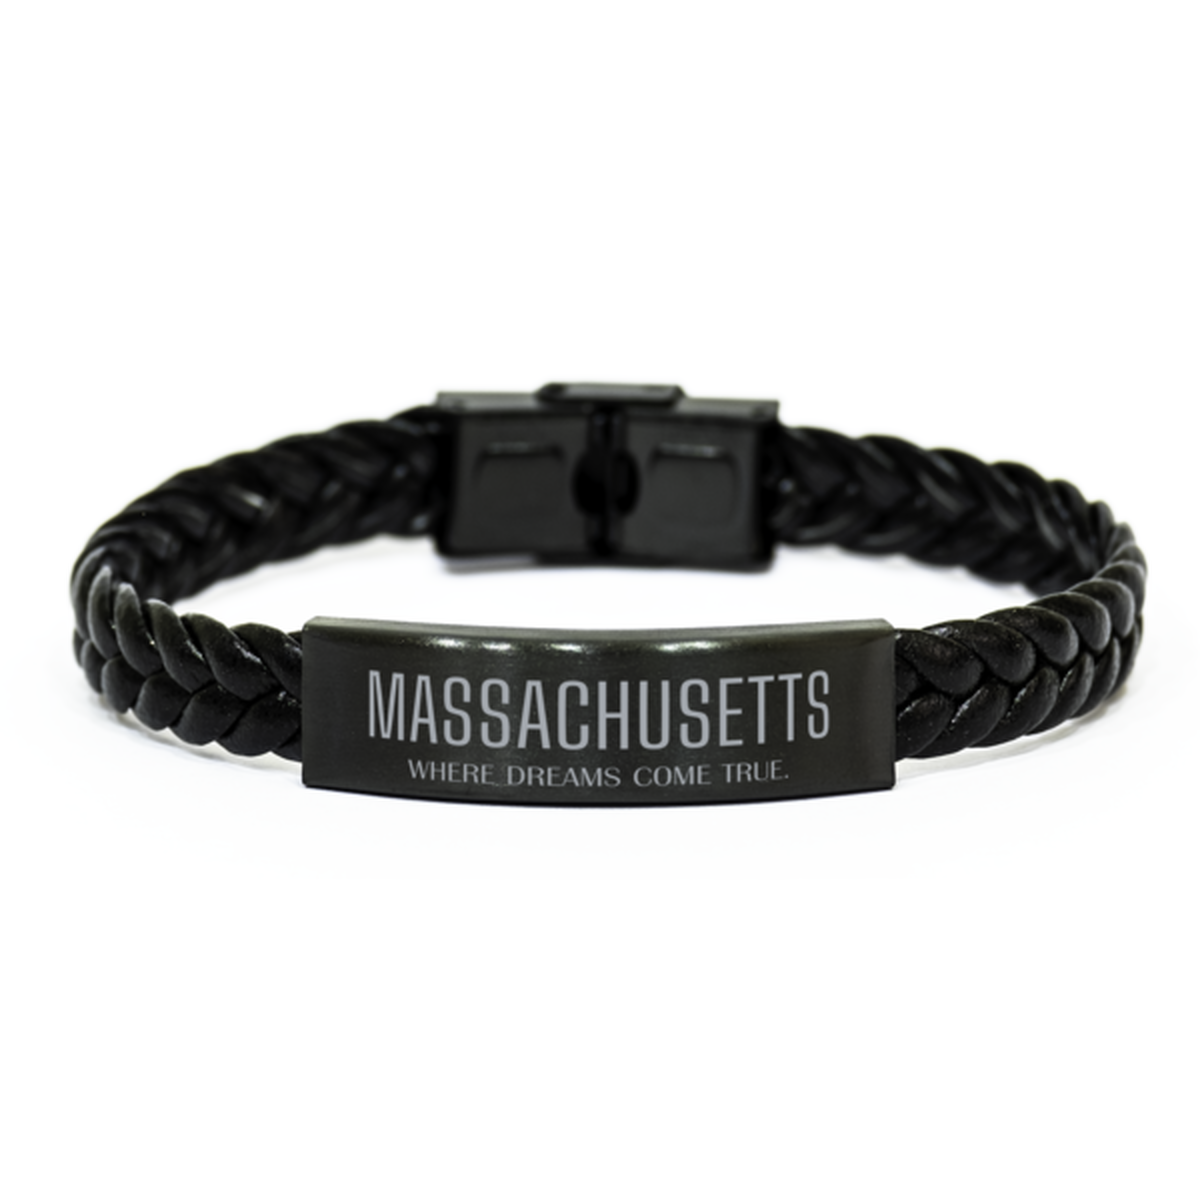 Love Massachusetts State Braided Leather Bracelet, Massachusetts Where dreams come true, Birthday Inspirational Gifts For Massachusetts Men, Women, Friends